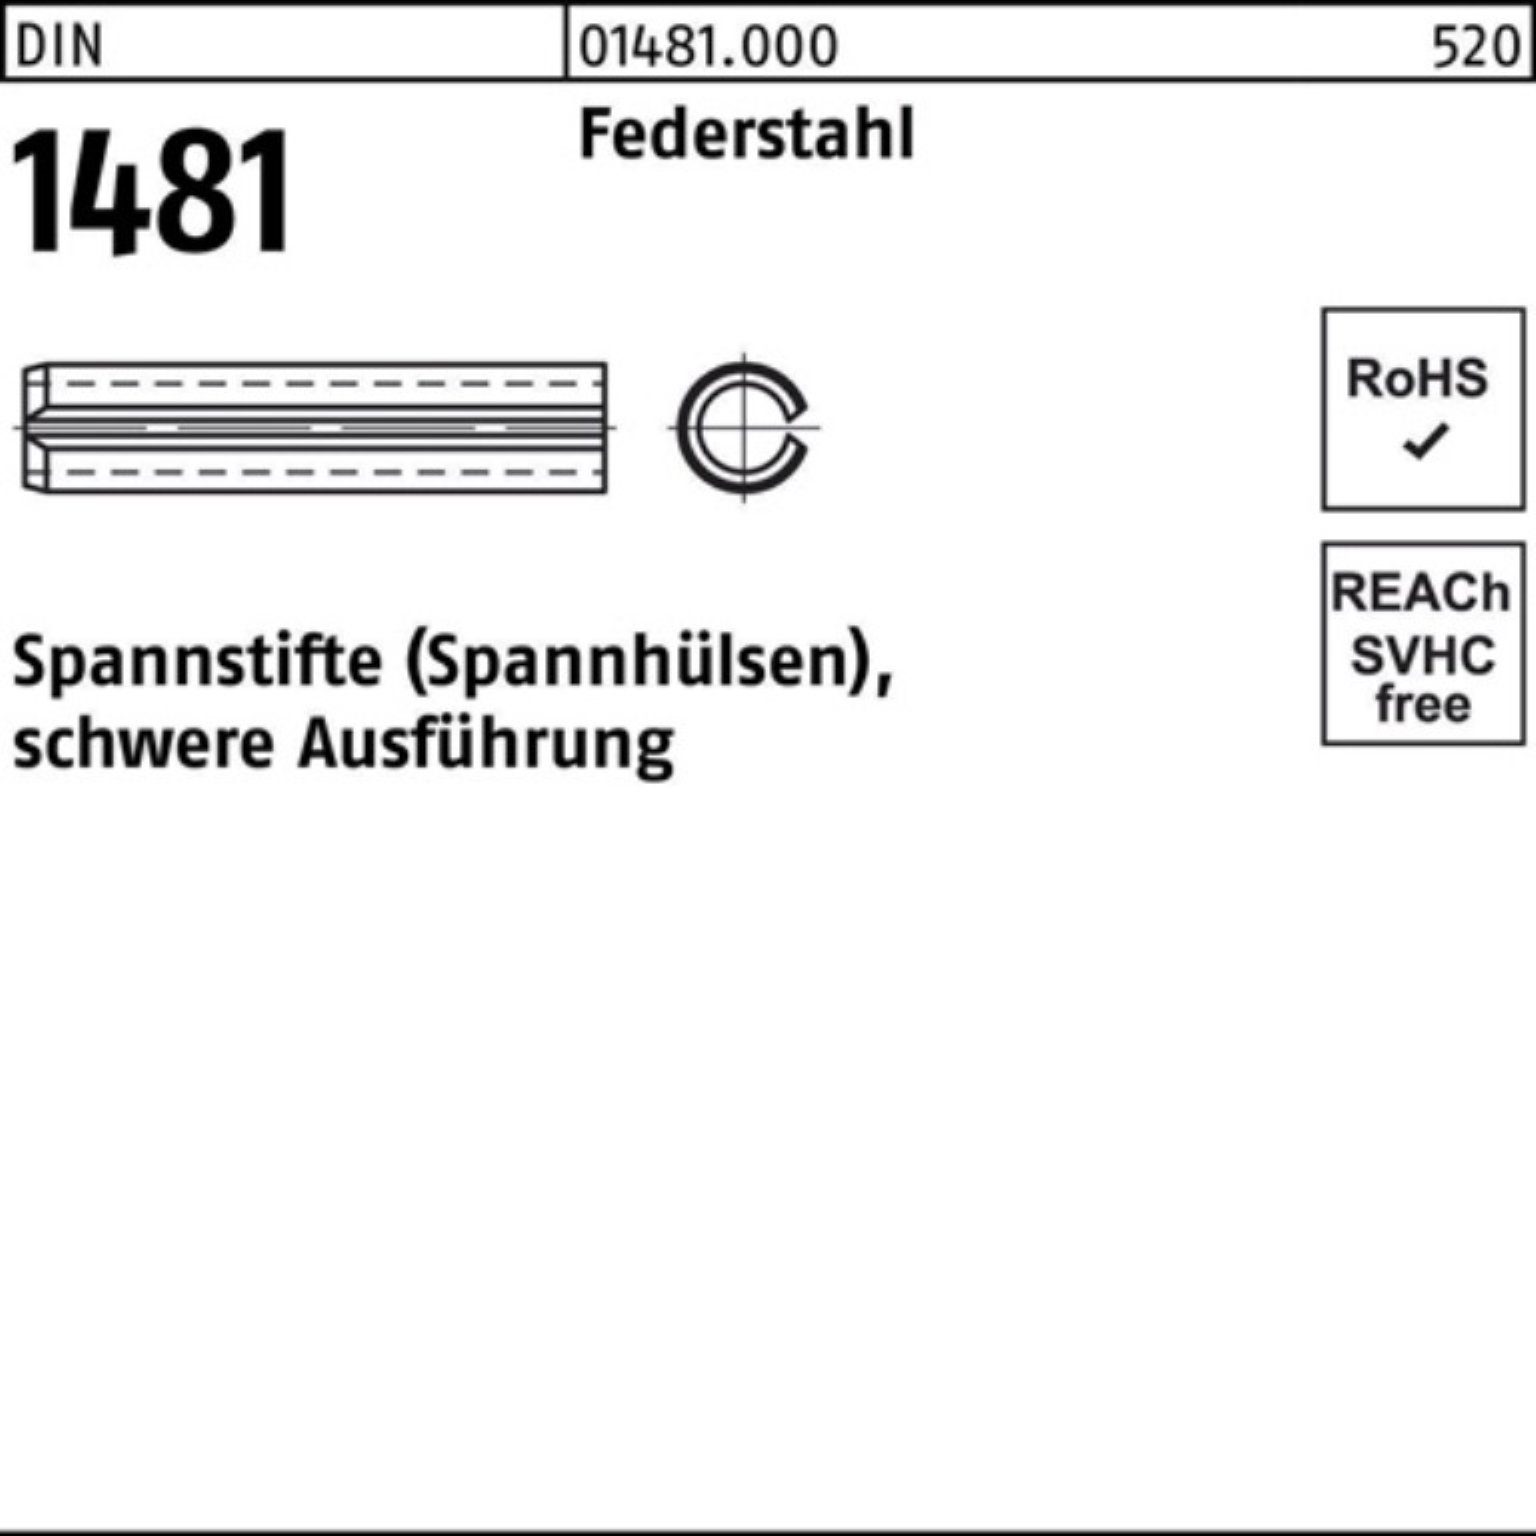 Reyher Spannstift 100er Pack Spannstift DIN 1481 10x 100 Federstahl schwere Ausführung